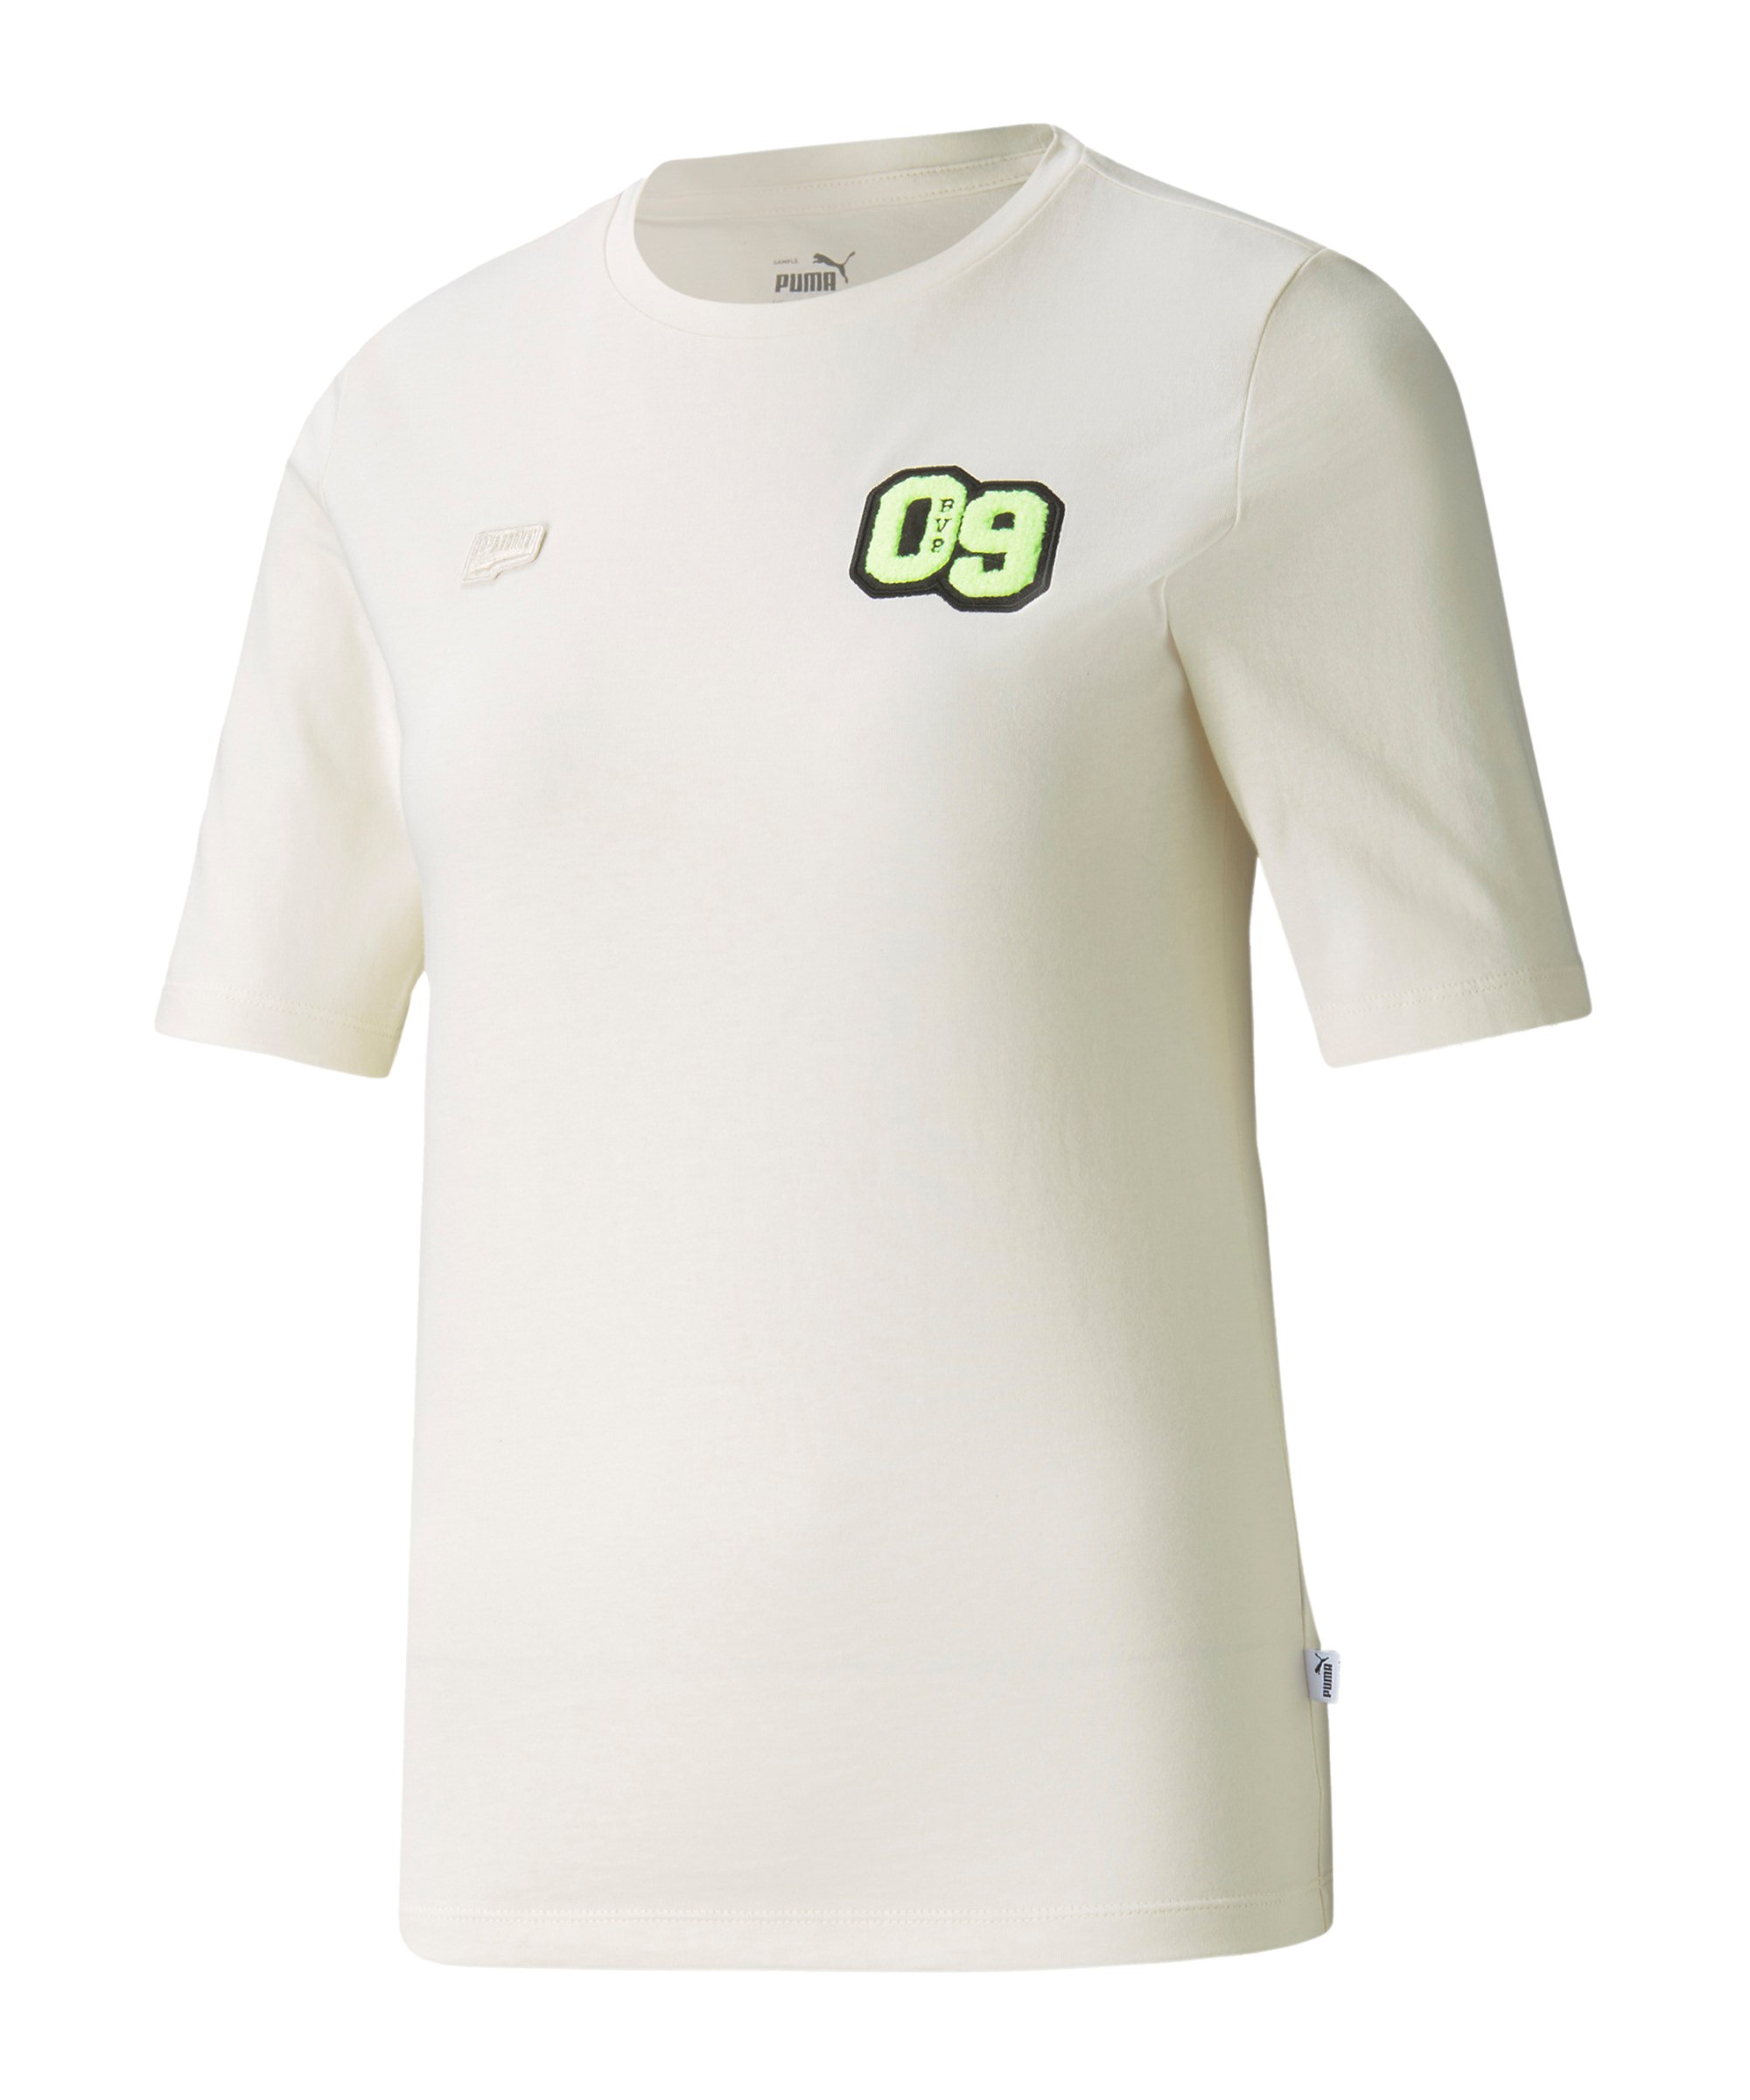 PUMA BVB Dortmund FtblFeat T-Shirt Damen F02 - weiss